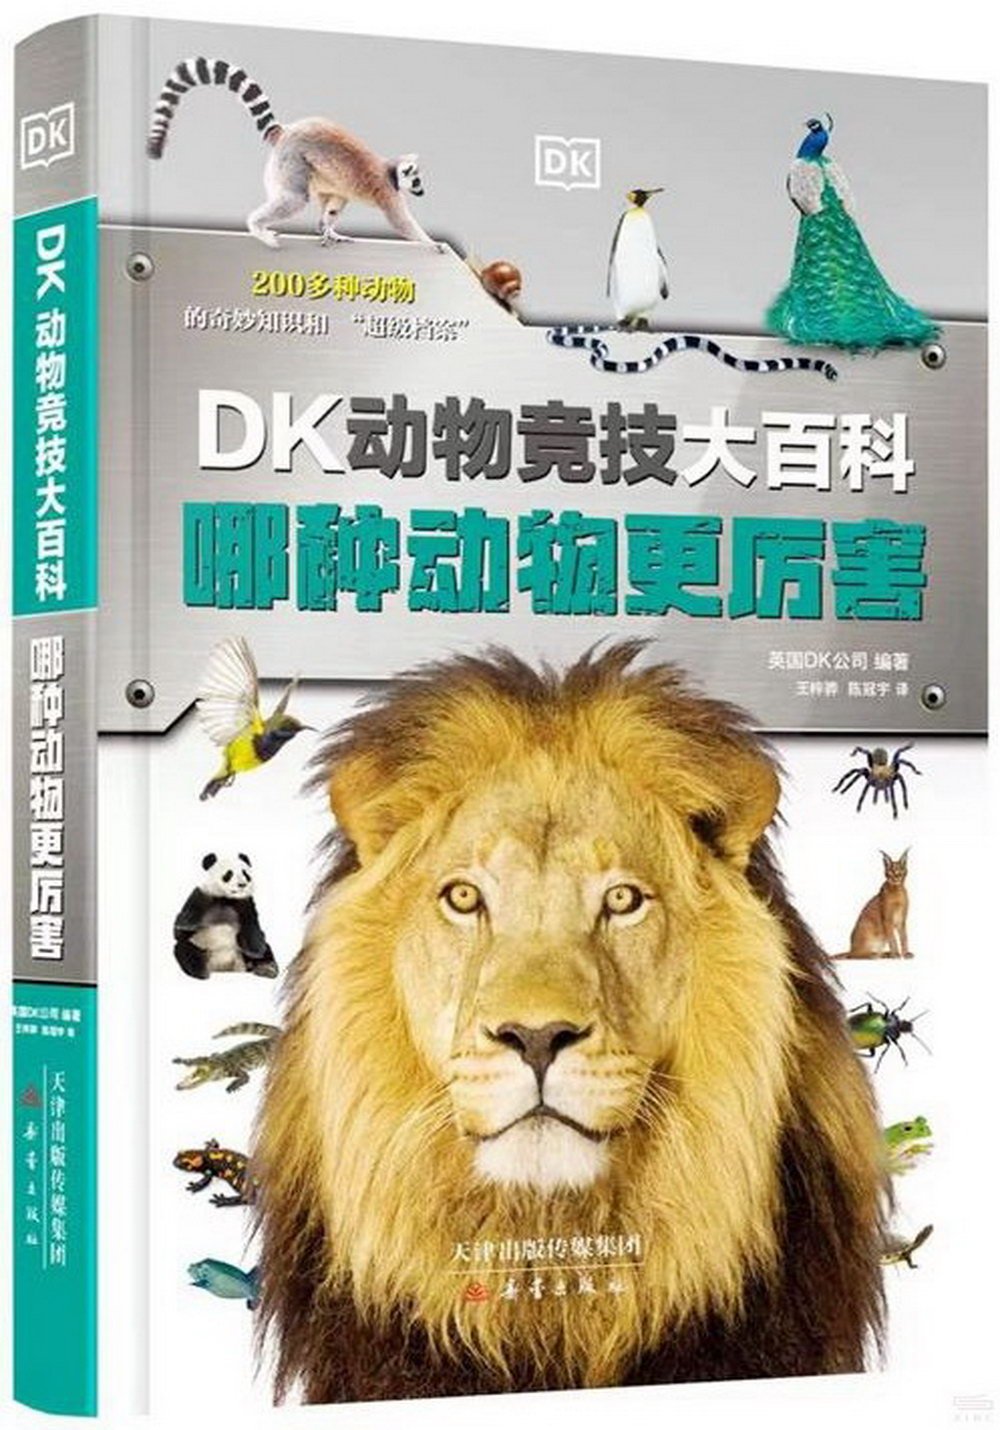 DK動物競技大百科：哪種動物更厲害